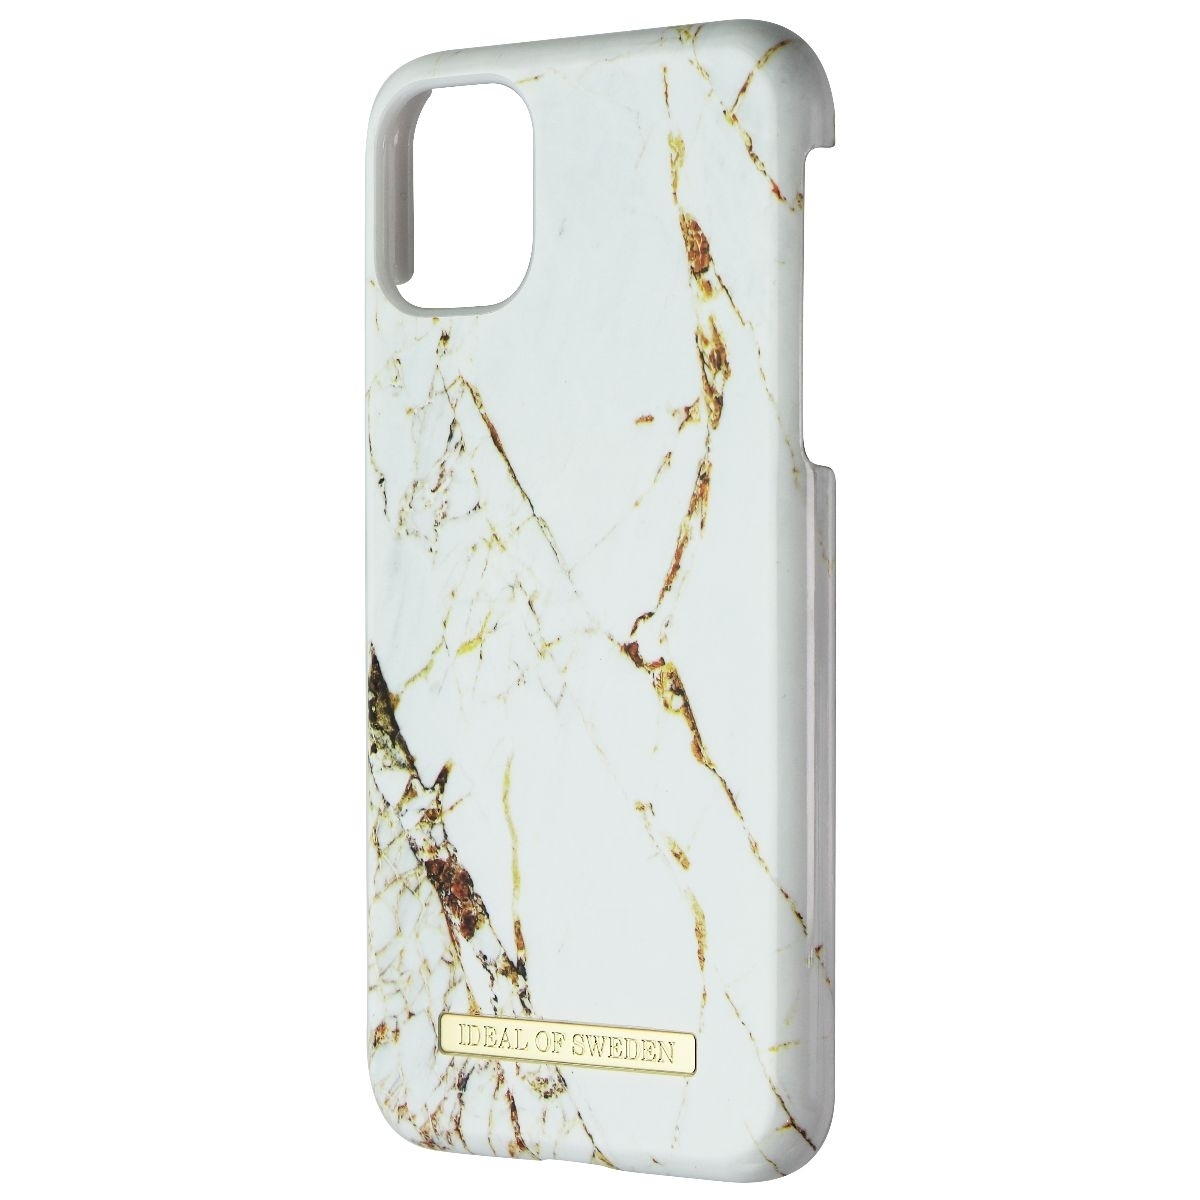 IDeal Of Sweden Hardshell Case For Apple IPhone 11 / XR - Carrara Gold (Refurbished)